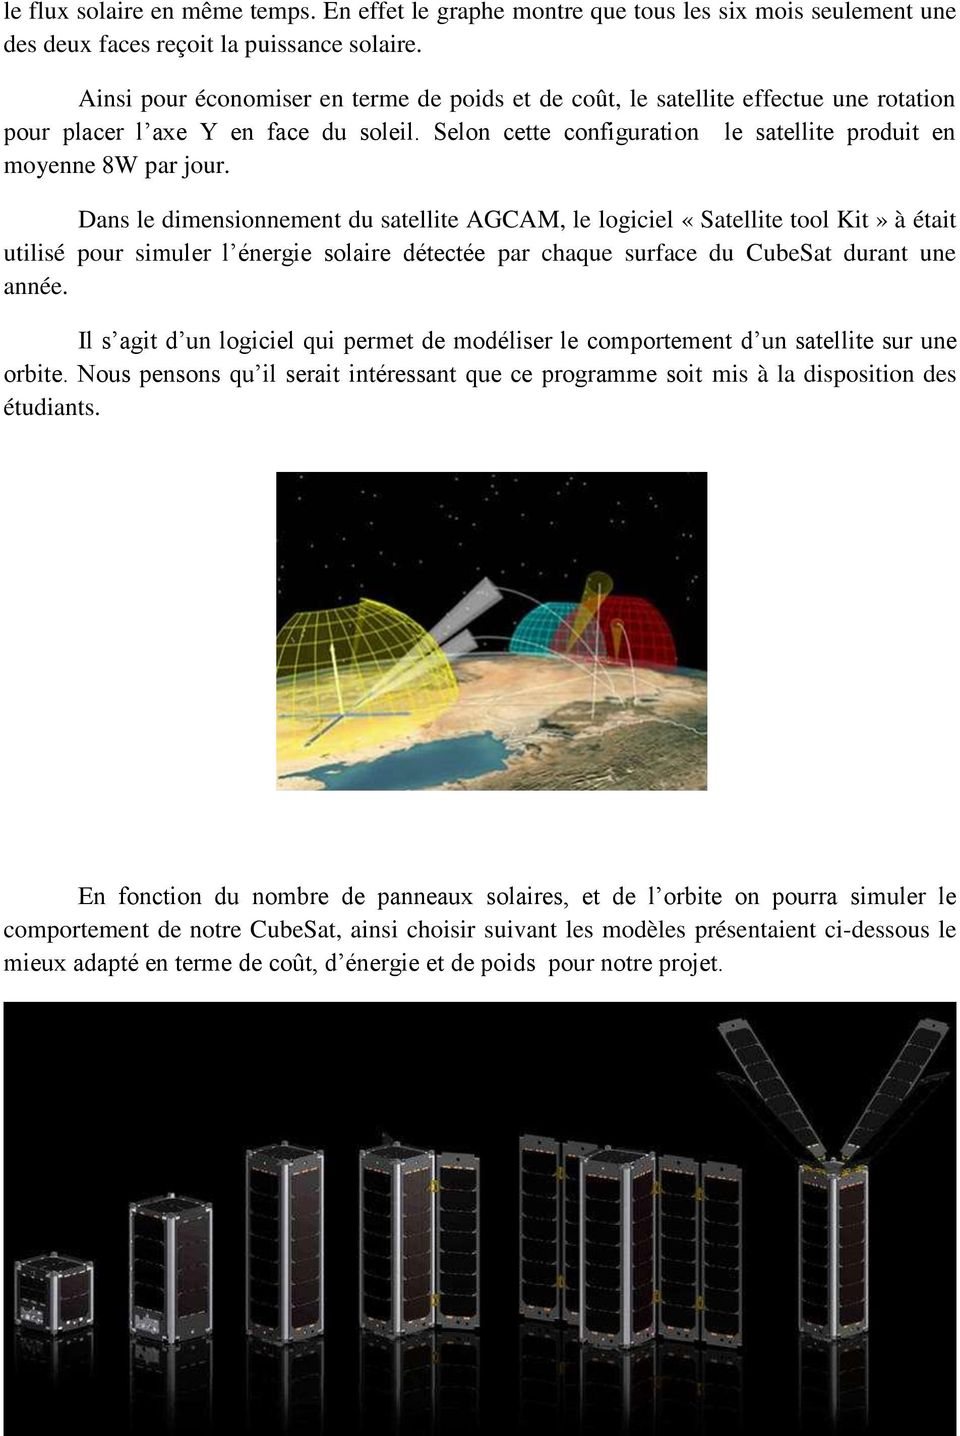 Dans le dimensionnement du satellite AGCAM, le logiciel «Satellite tool Kit» à était utilisé pour simuler l énergie solaire détectée par chaque surface du CubeSat durant une année.